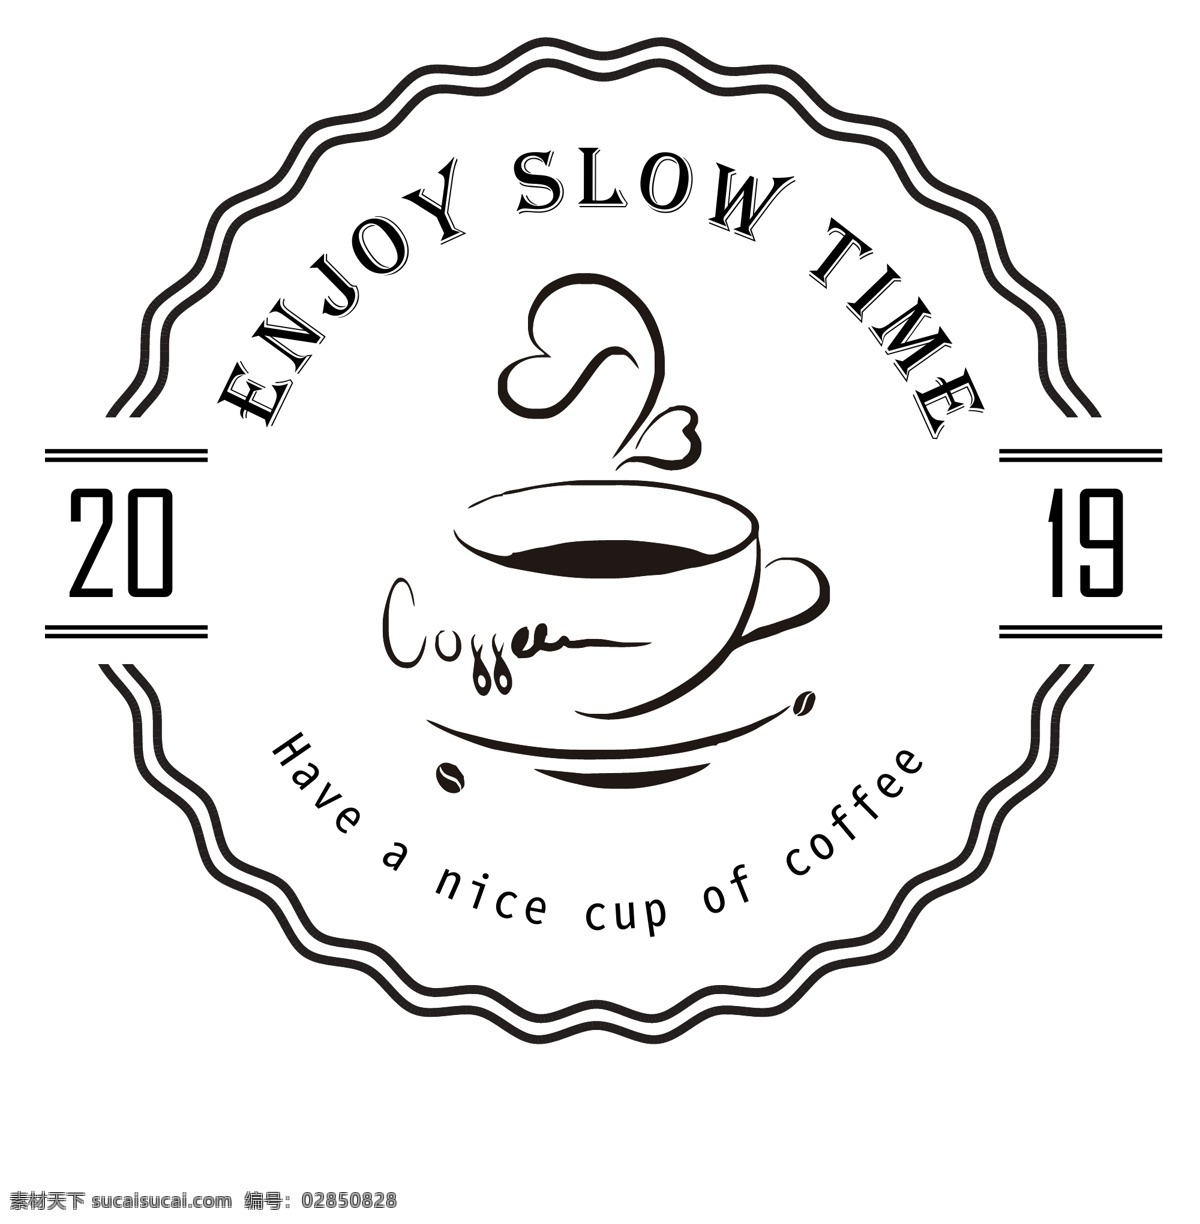 咖啡logo 咖啡店 咖啡 logo 招牌 vi 标志 图标 咖啡豆 咖啡杯 门头 模板 logo设计